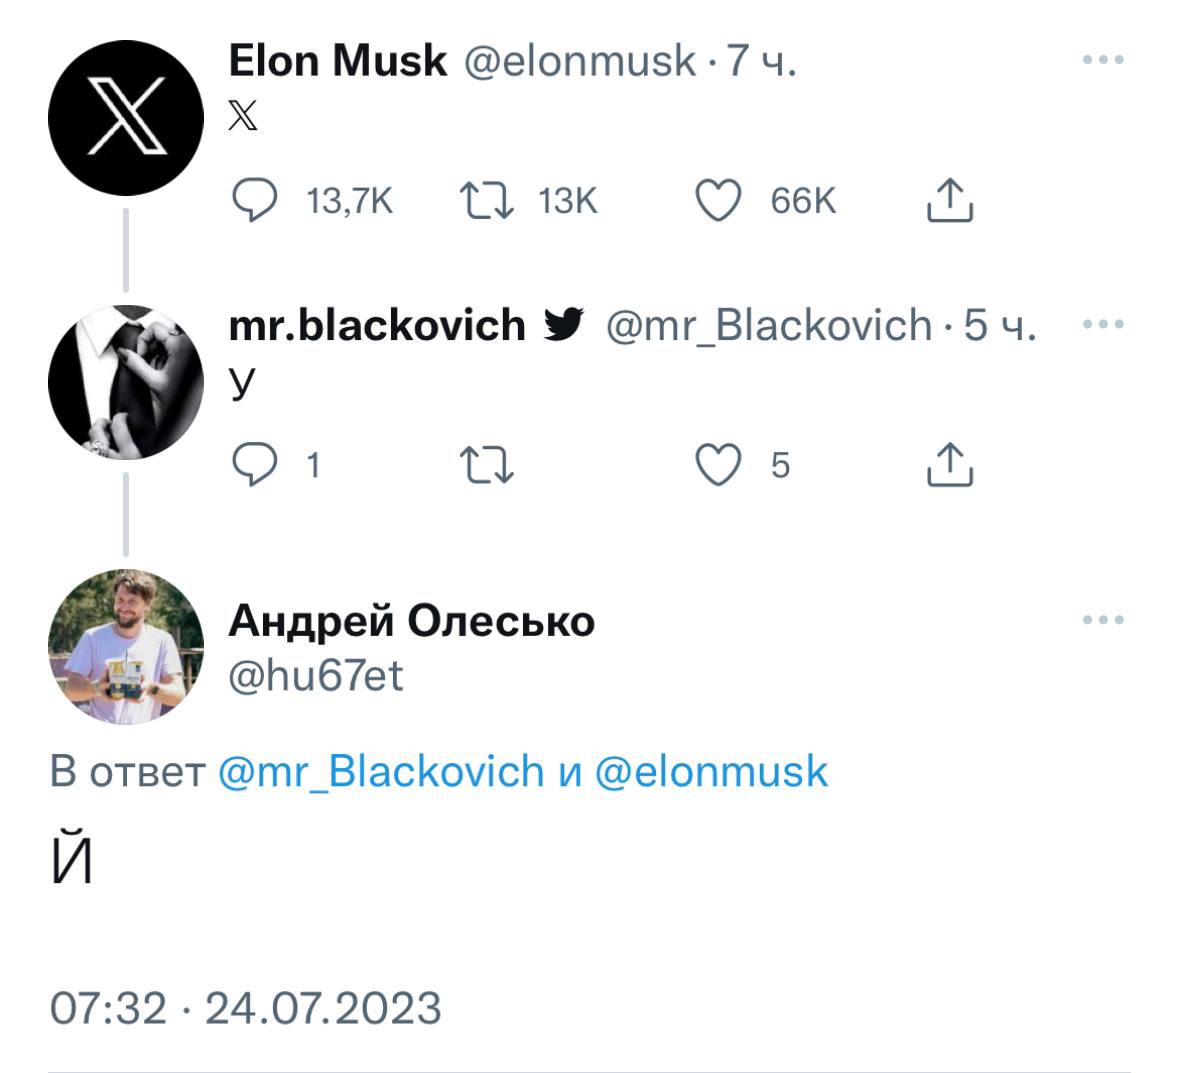 Как тебе такое, Илон Маск? Думал, сменишь логотип Твиттера на Х, и русские этим не воспользуются?